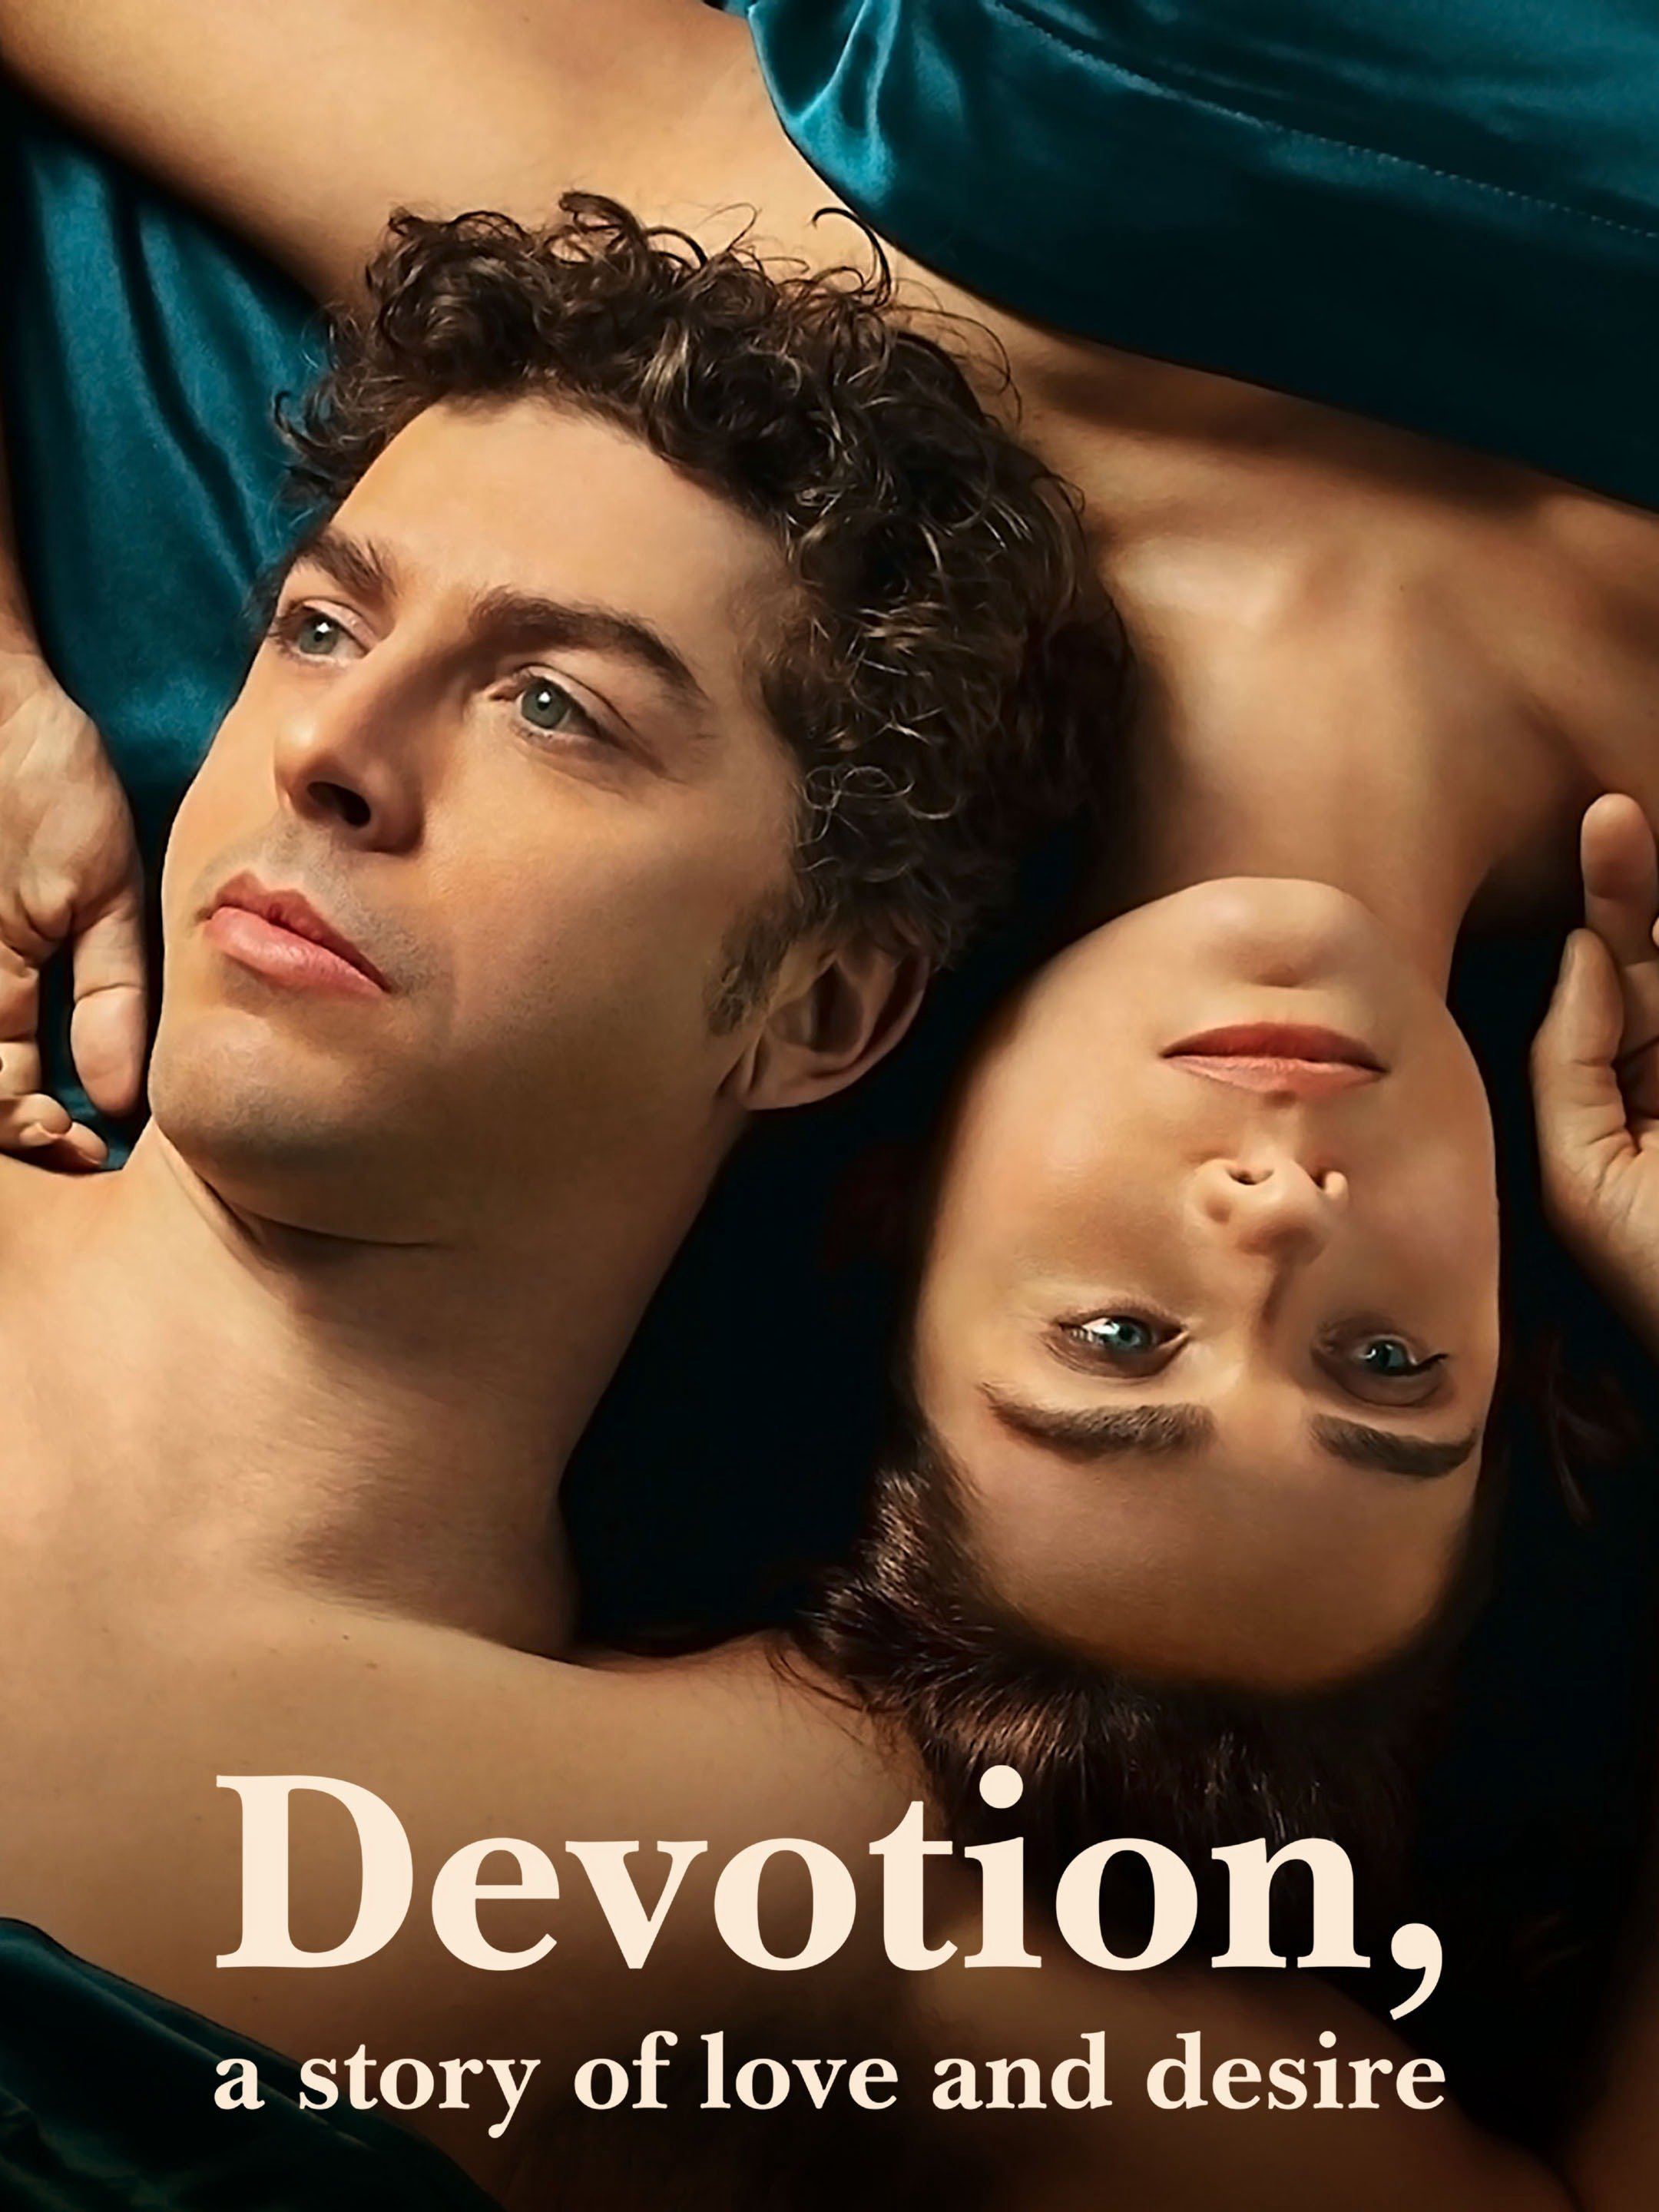 Poster Phim Chung thủy: Câu chuyện về tình yêu và dục vọng (Devotion, a Story of Love and Desire)